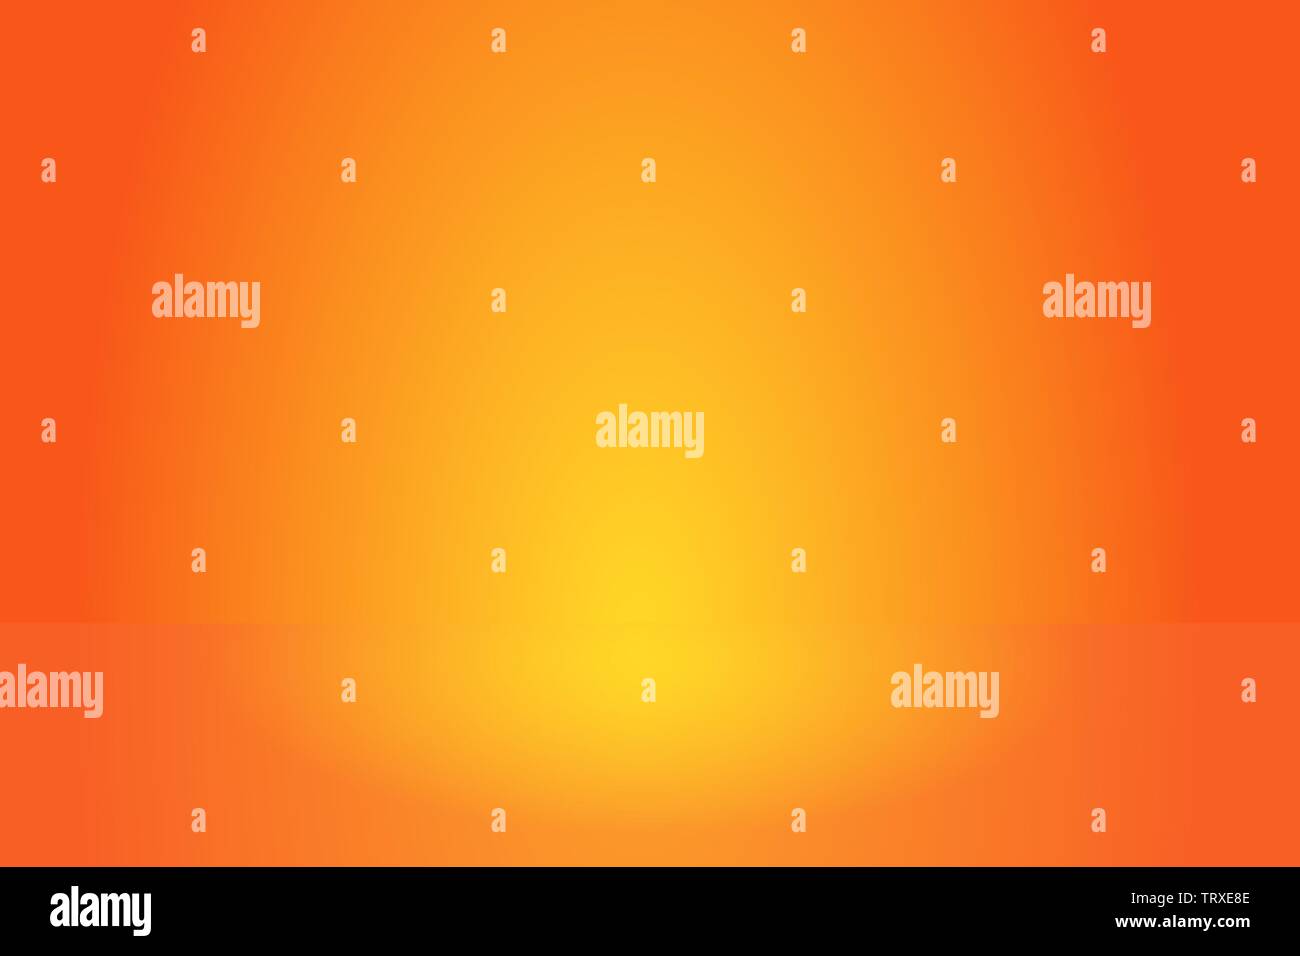 Abstrakte orange Gradient verschwommen glatten Hintergrund wie ein Studio Zimmer - kann für die Anzeige von Produkten etc. verwendet werden. Stock Vektor